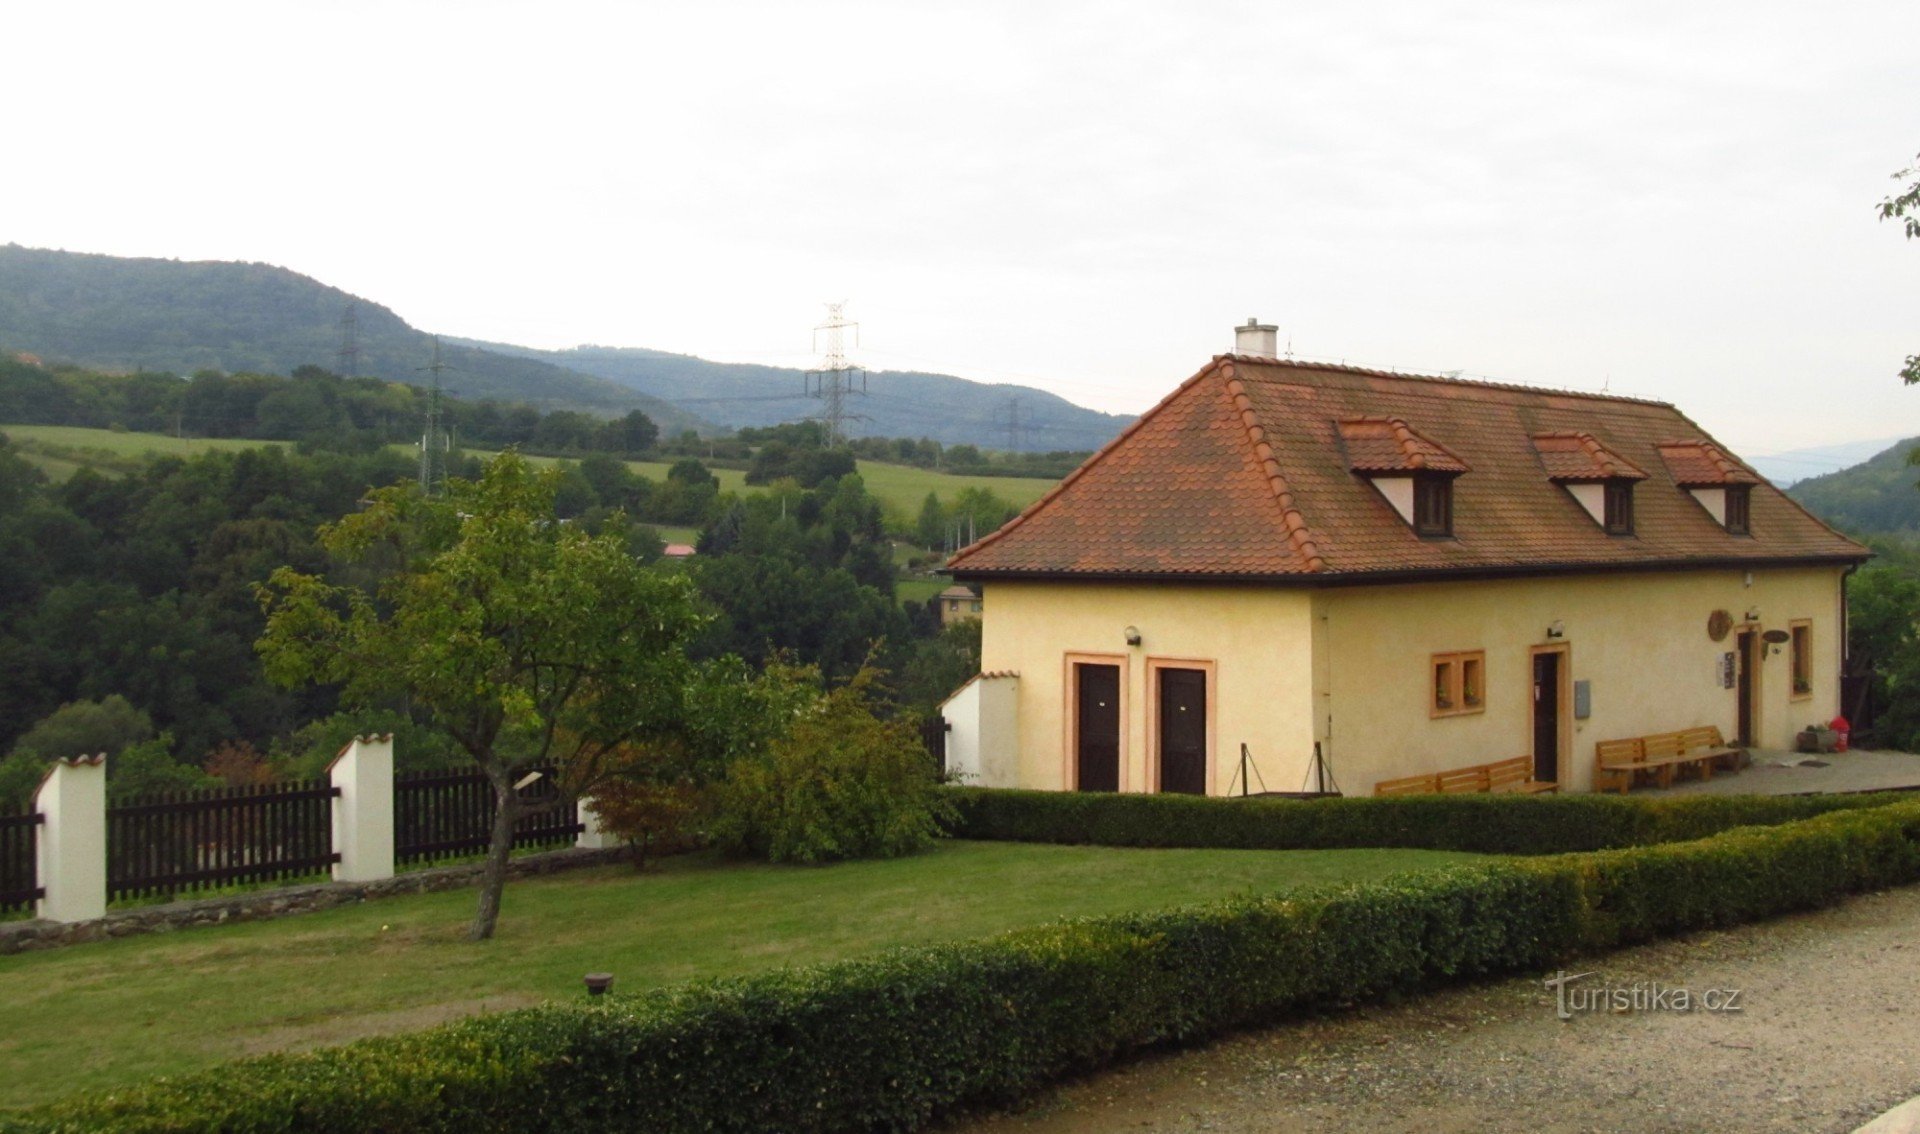 Mănăstirea franciscană din Kadani - restaurant Konírna